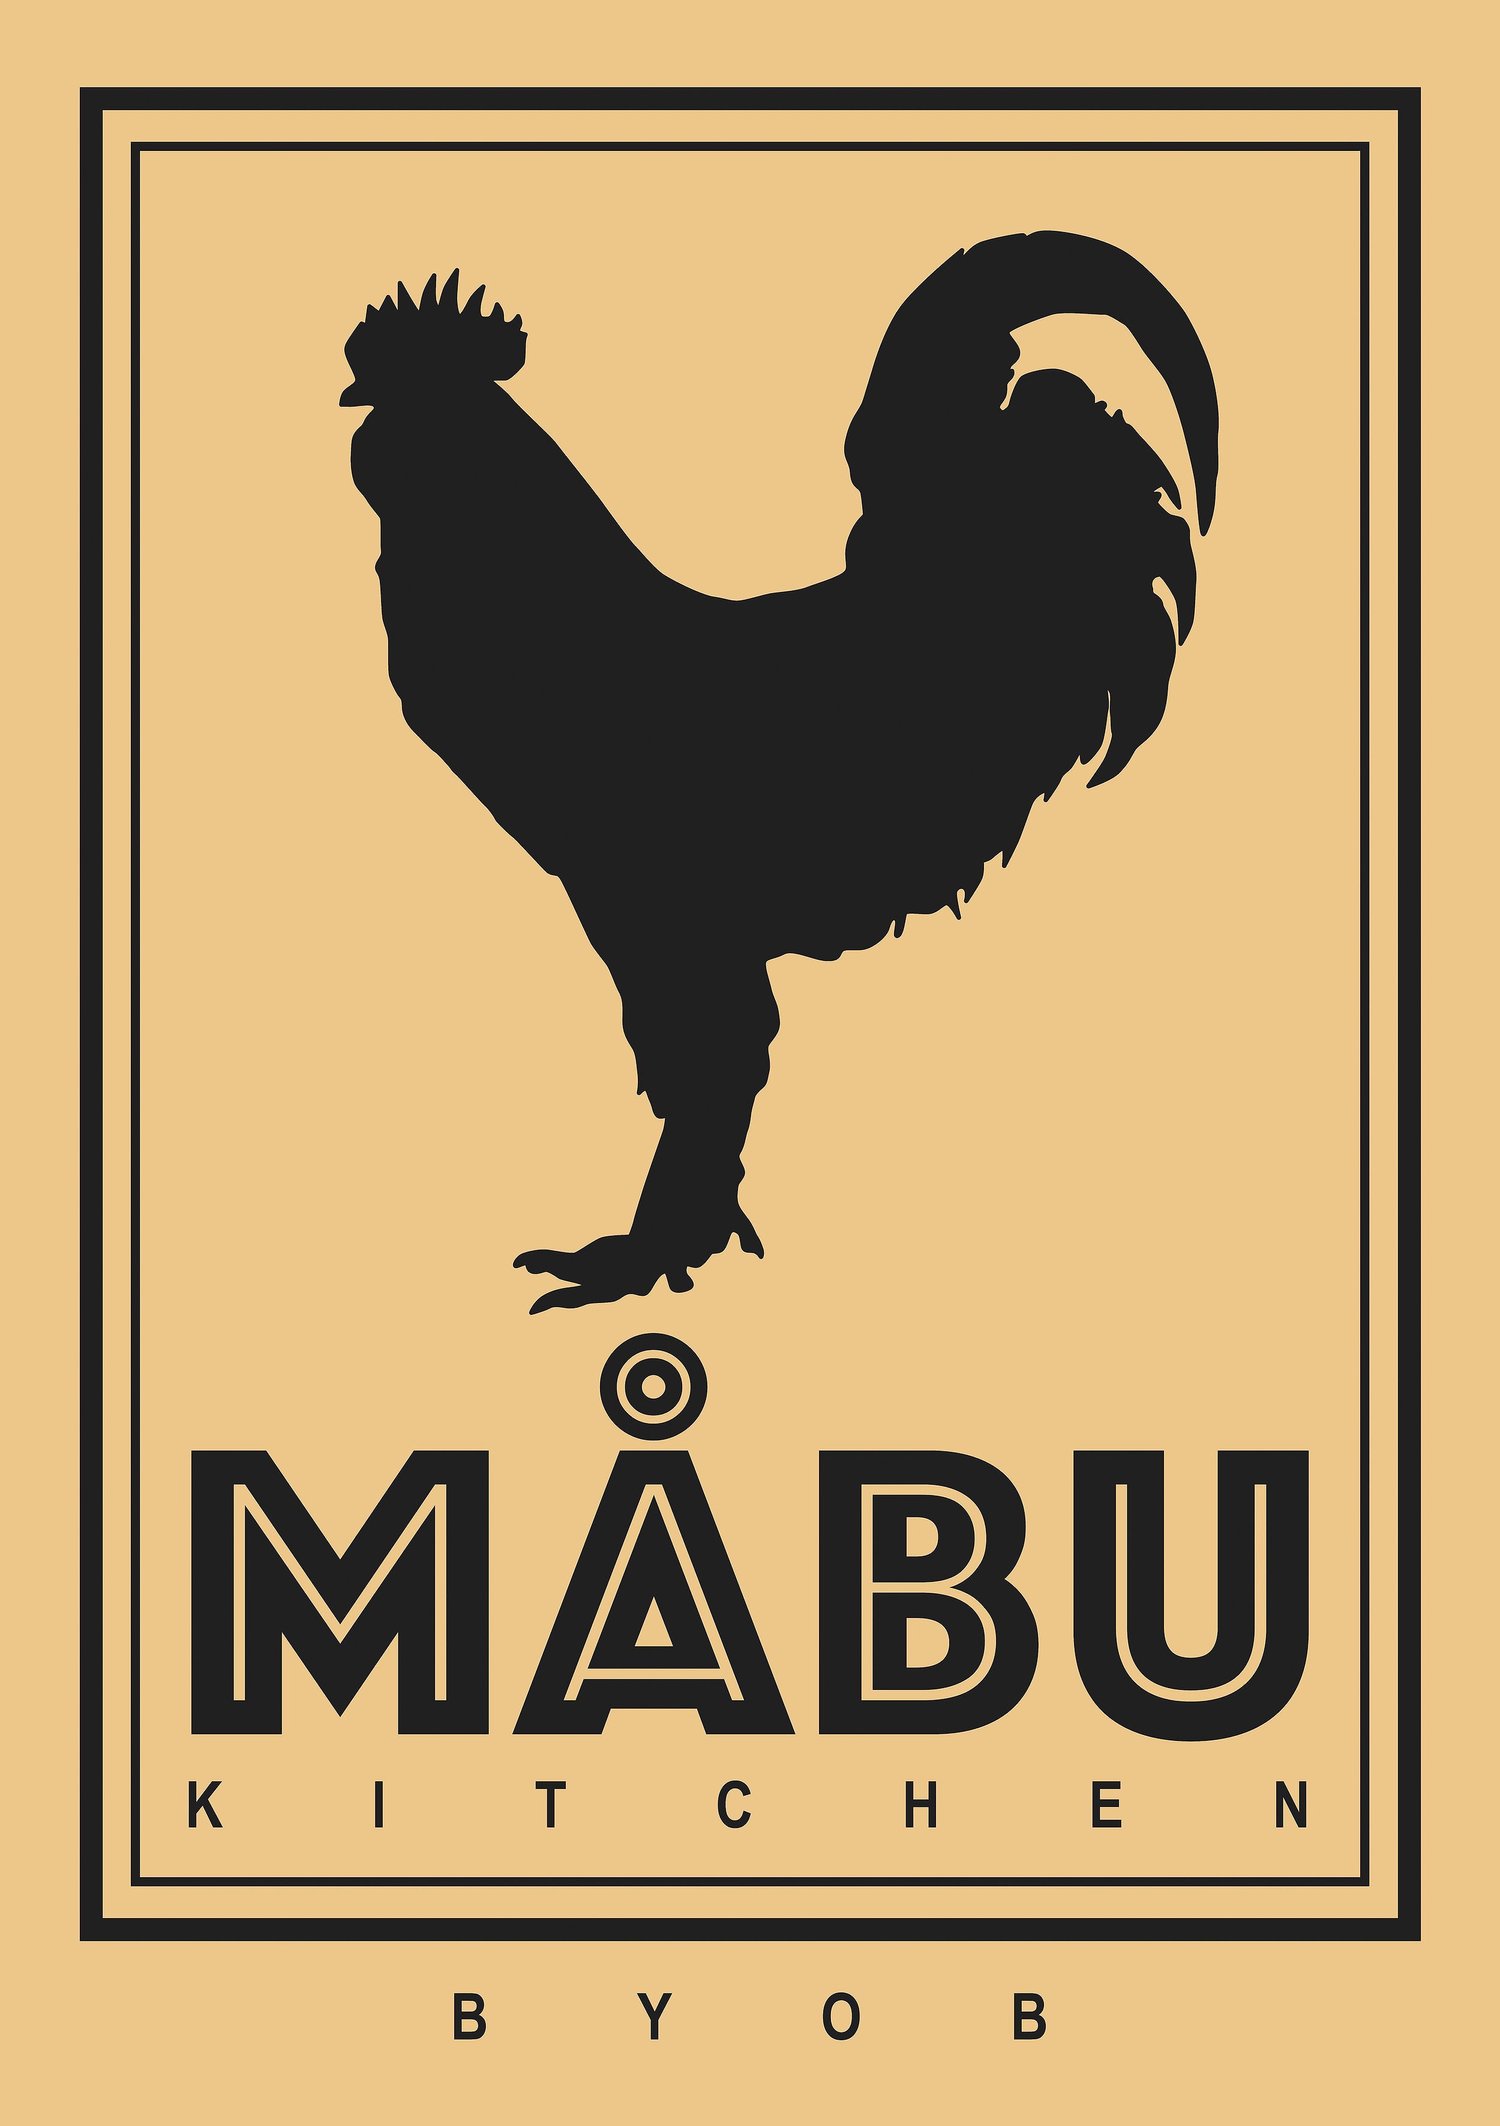 Mabu Kitchen